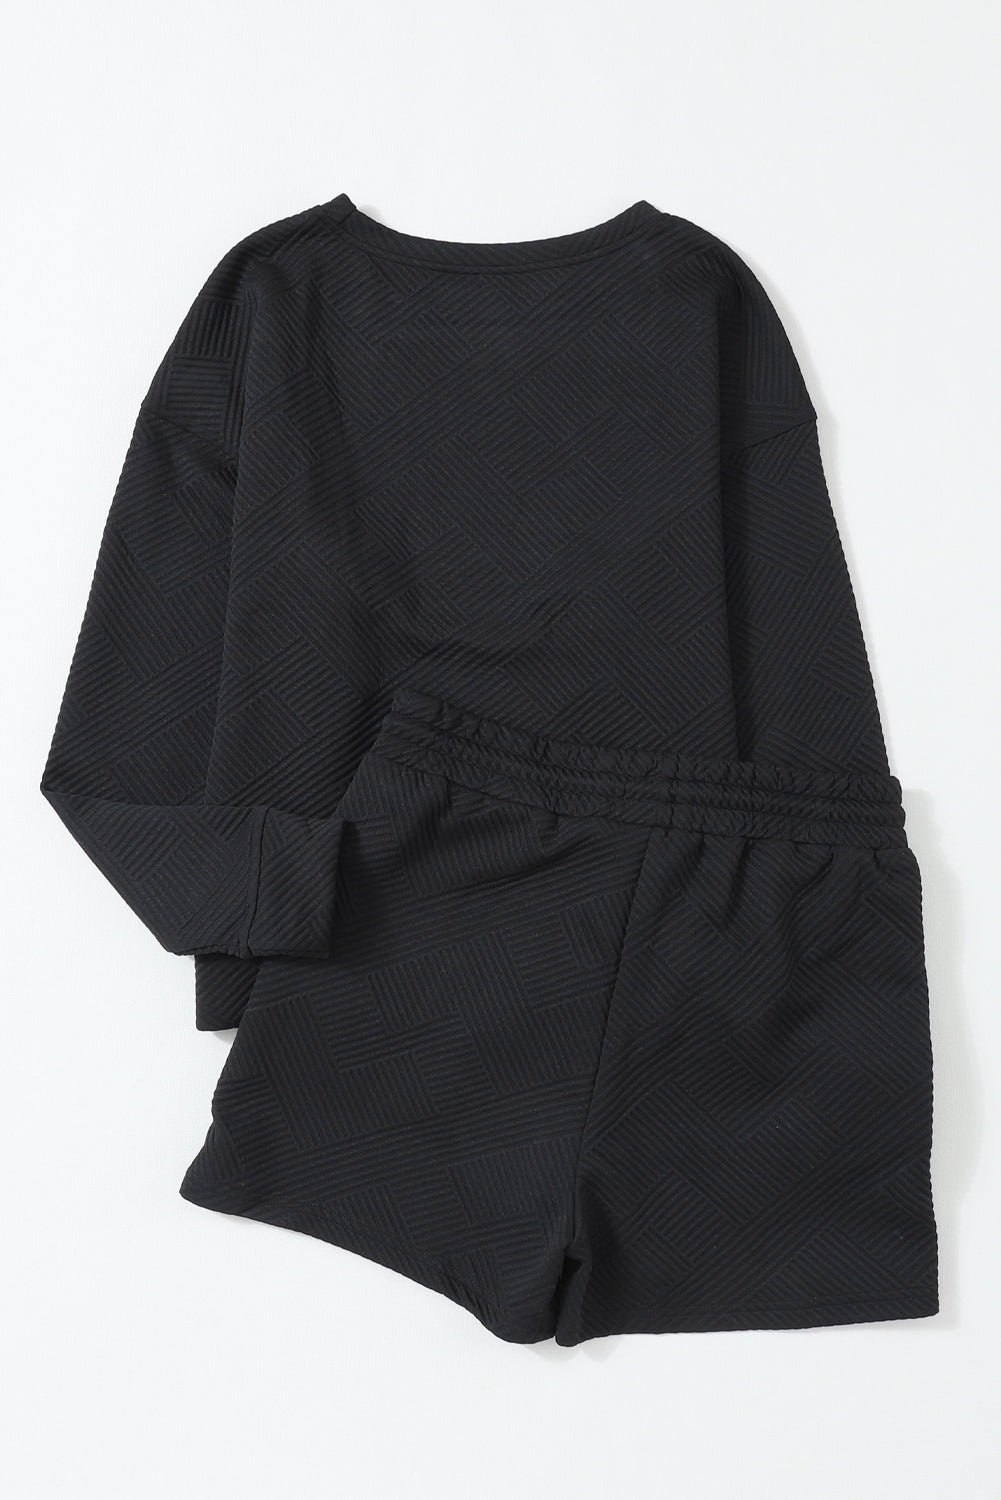 Gray 2pcs Solid Textured Drawstring Shorts Set